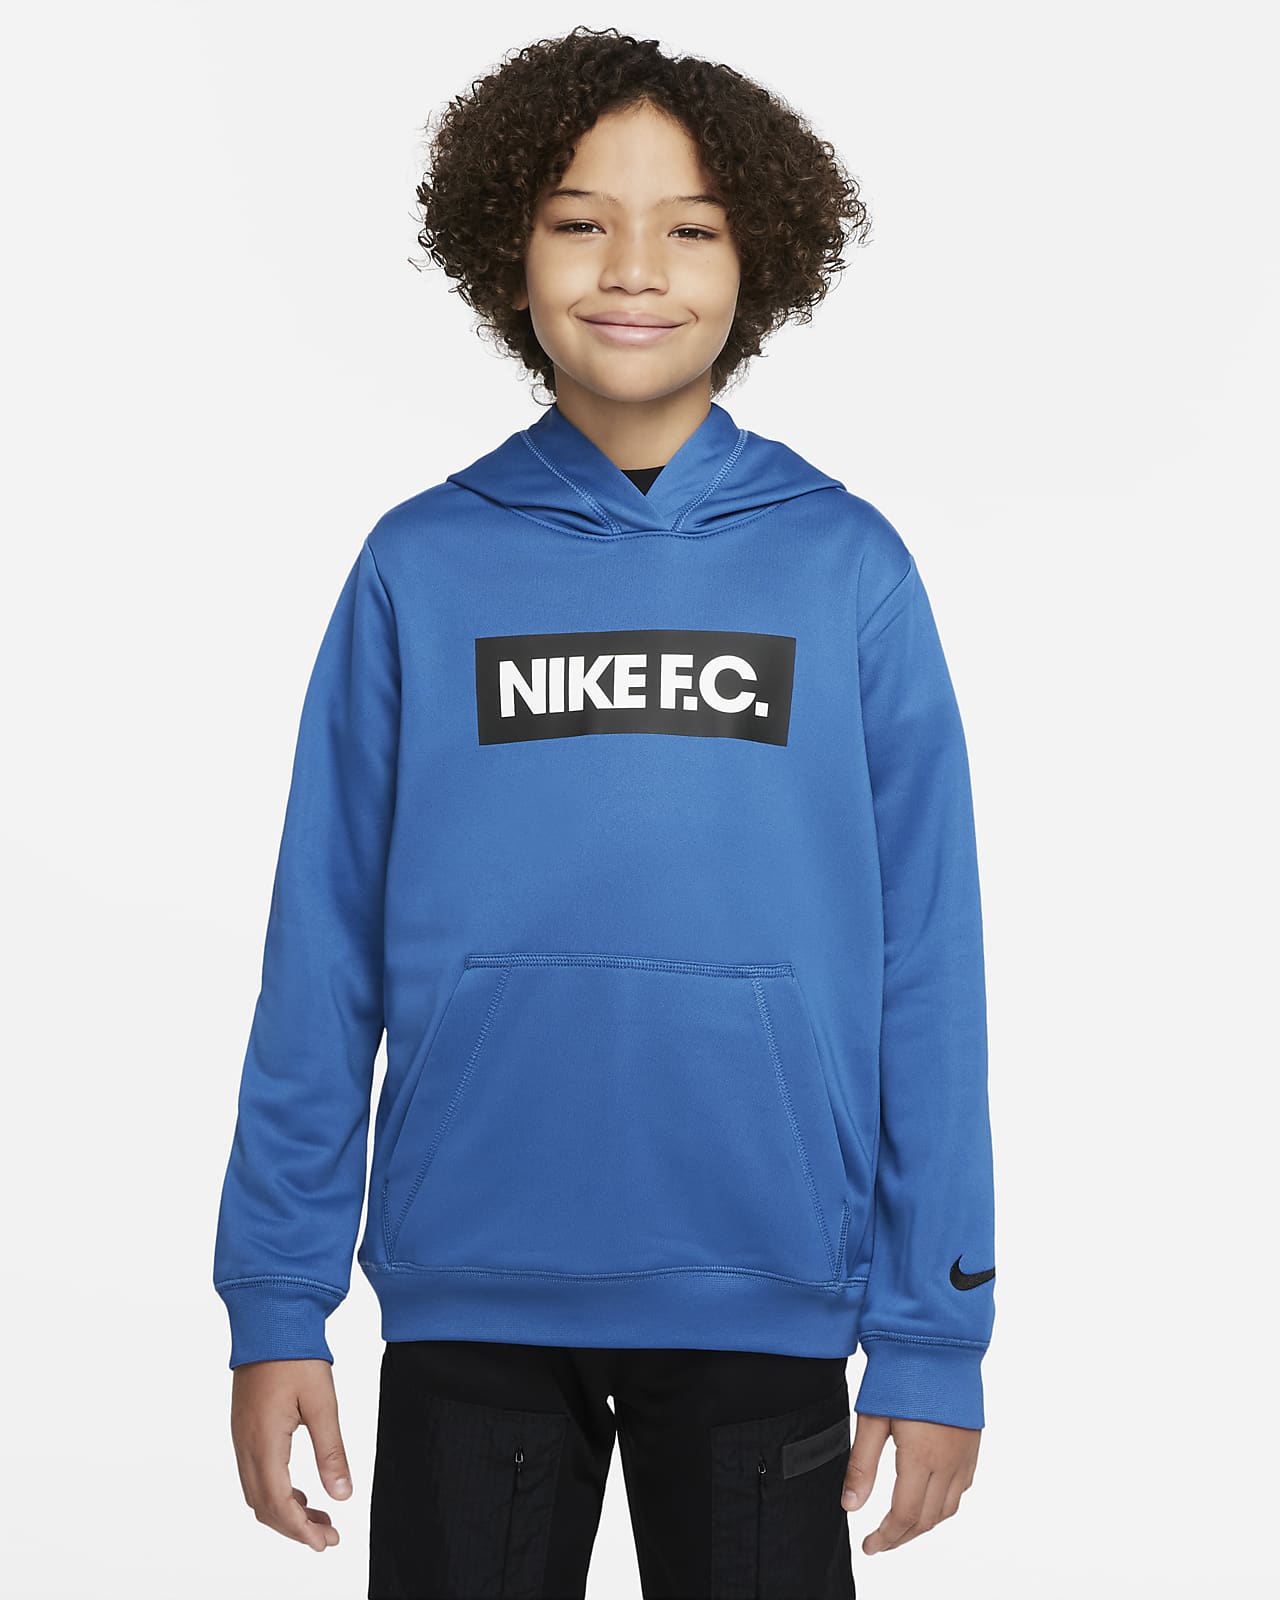 Ποδοσφαιρική μπλούζα με κουκούλα Nike F.C. για μεγάλα παιδιά